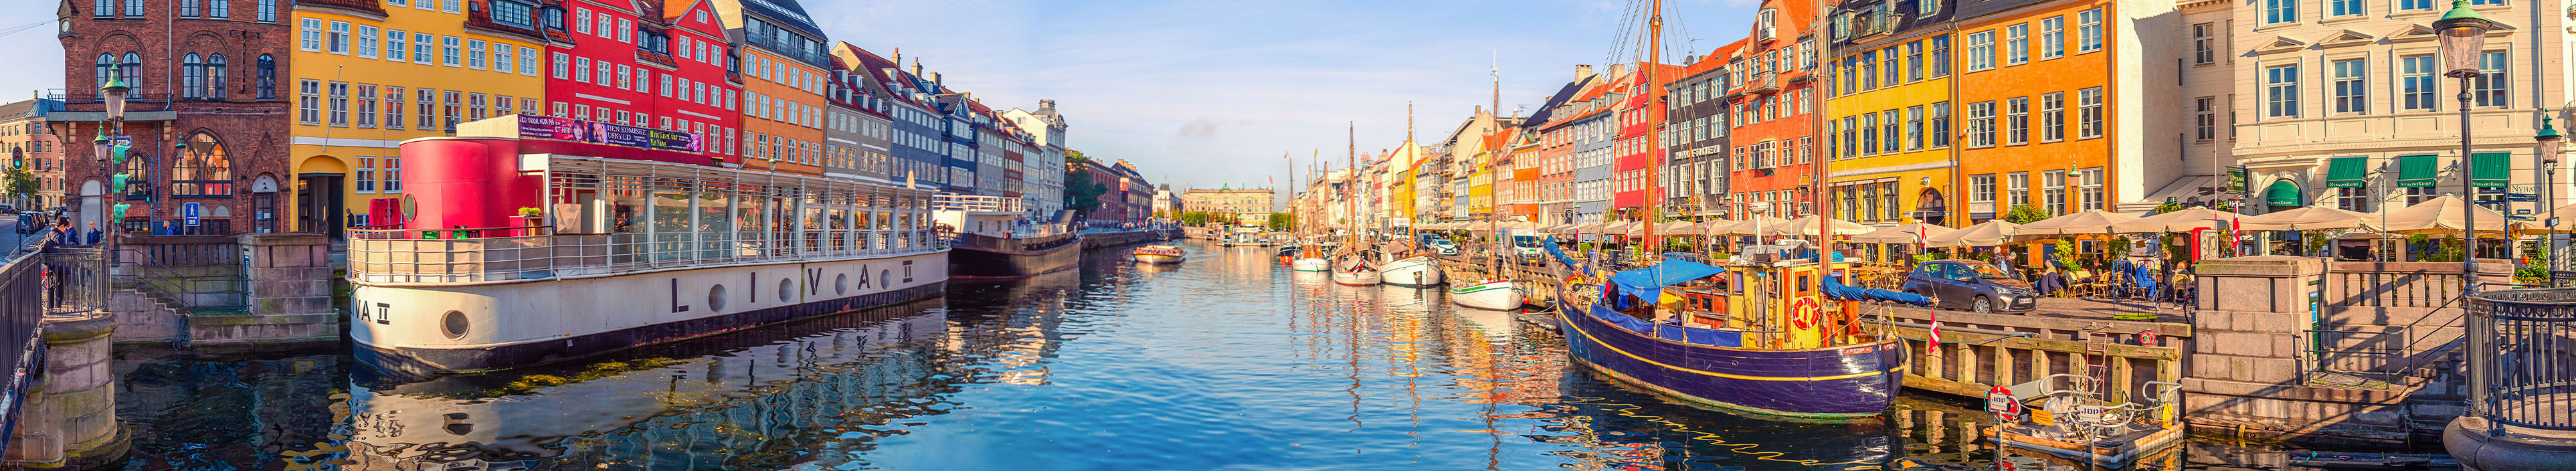 Nyhavn in Kopenhagen, bunte Häuser, ein Kanal und Schiffe